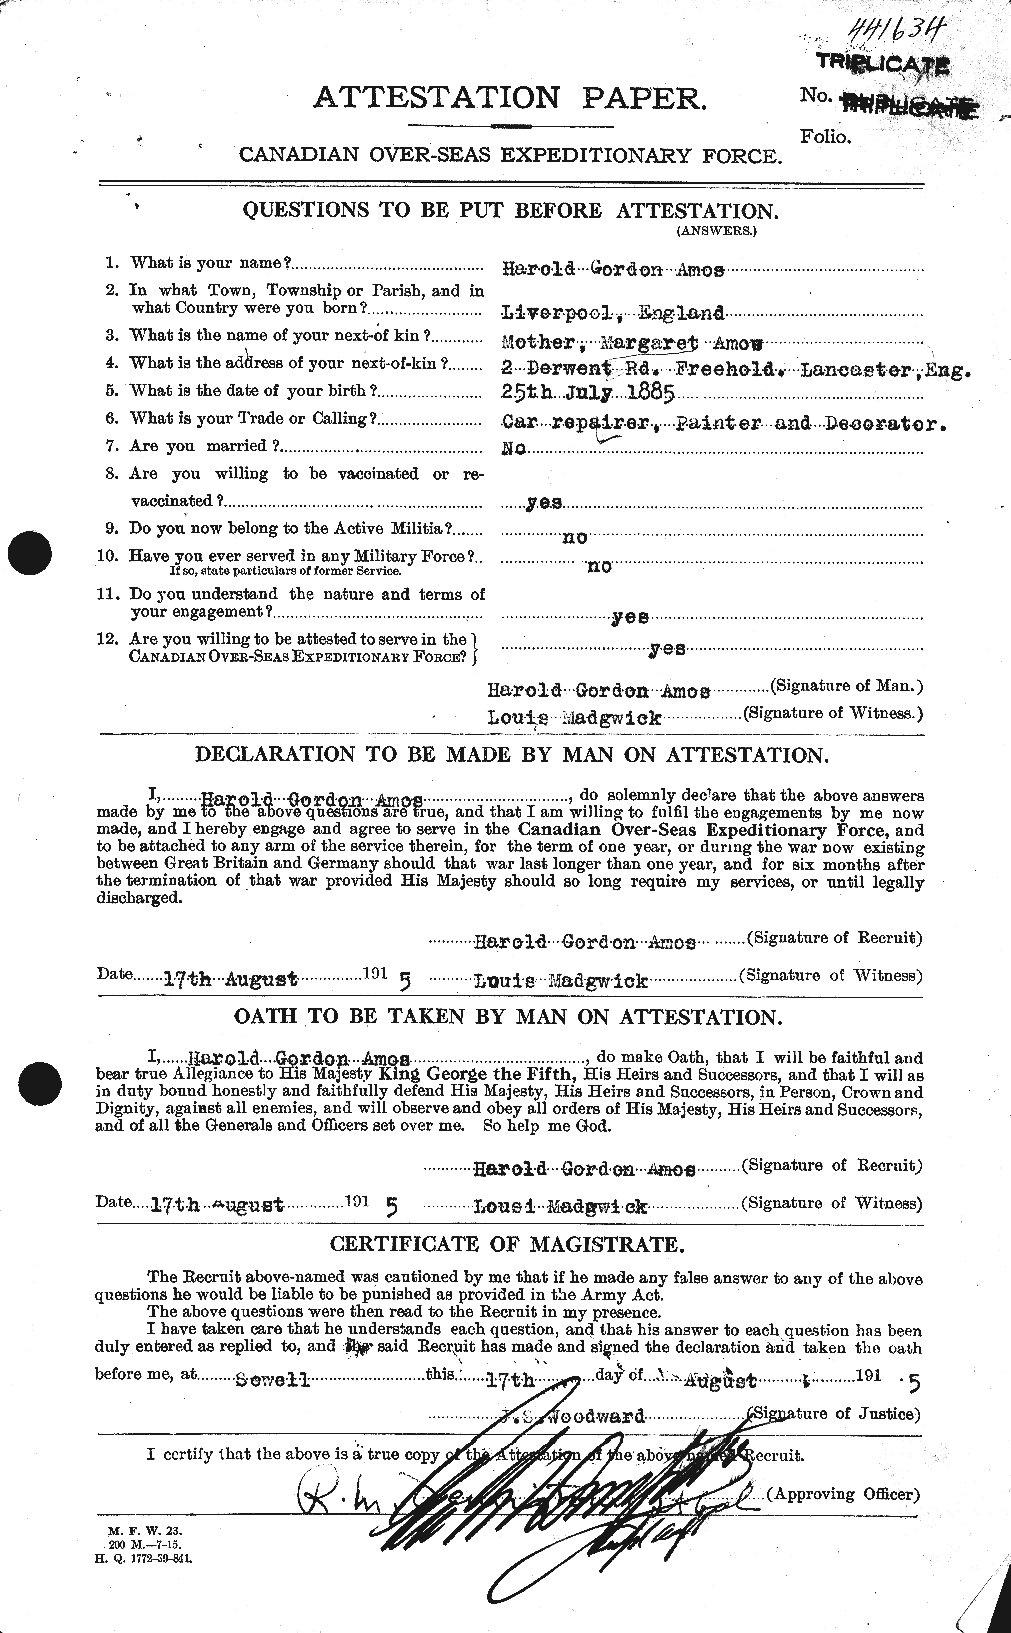 Dossiers du Personnel de la Première Guerre mondiale - CEC 208659a